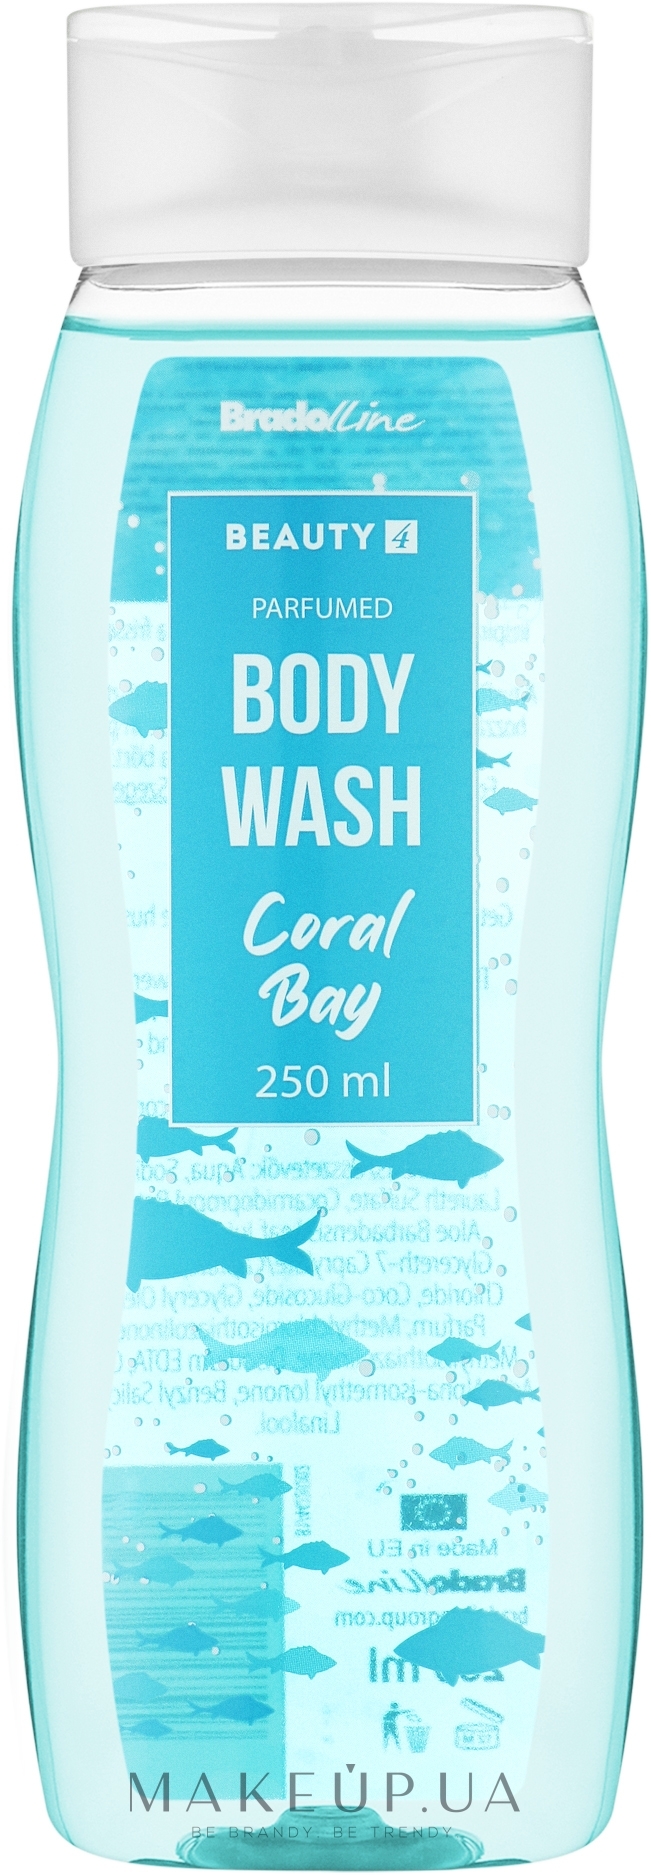 Гель для душа "Coral Bay" - Bradoline Beauty 4 Body Wash — фото 250ml